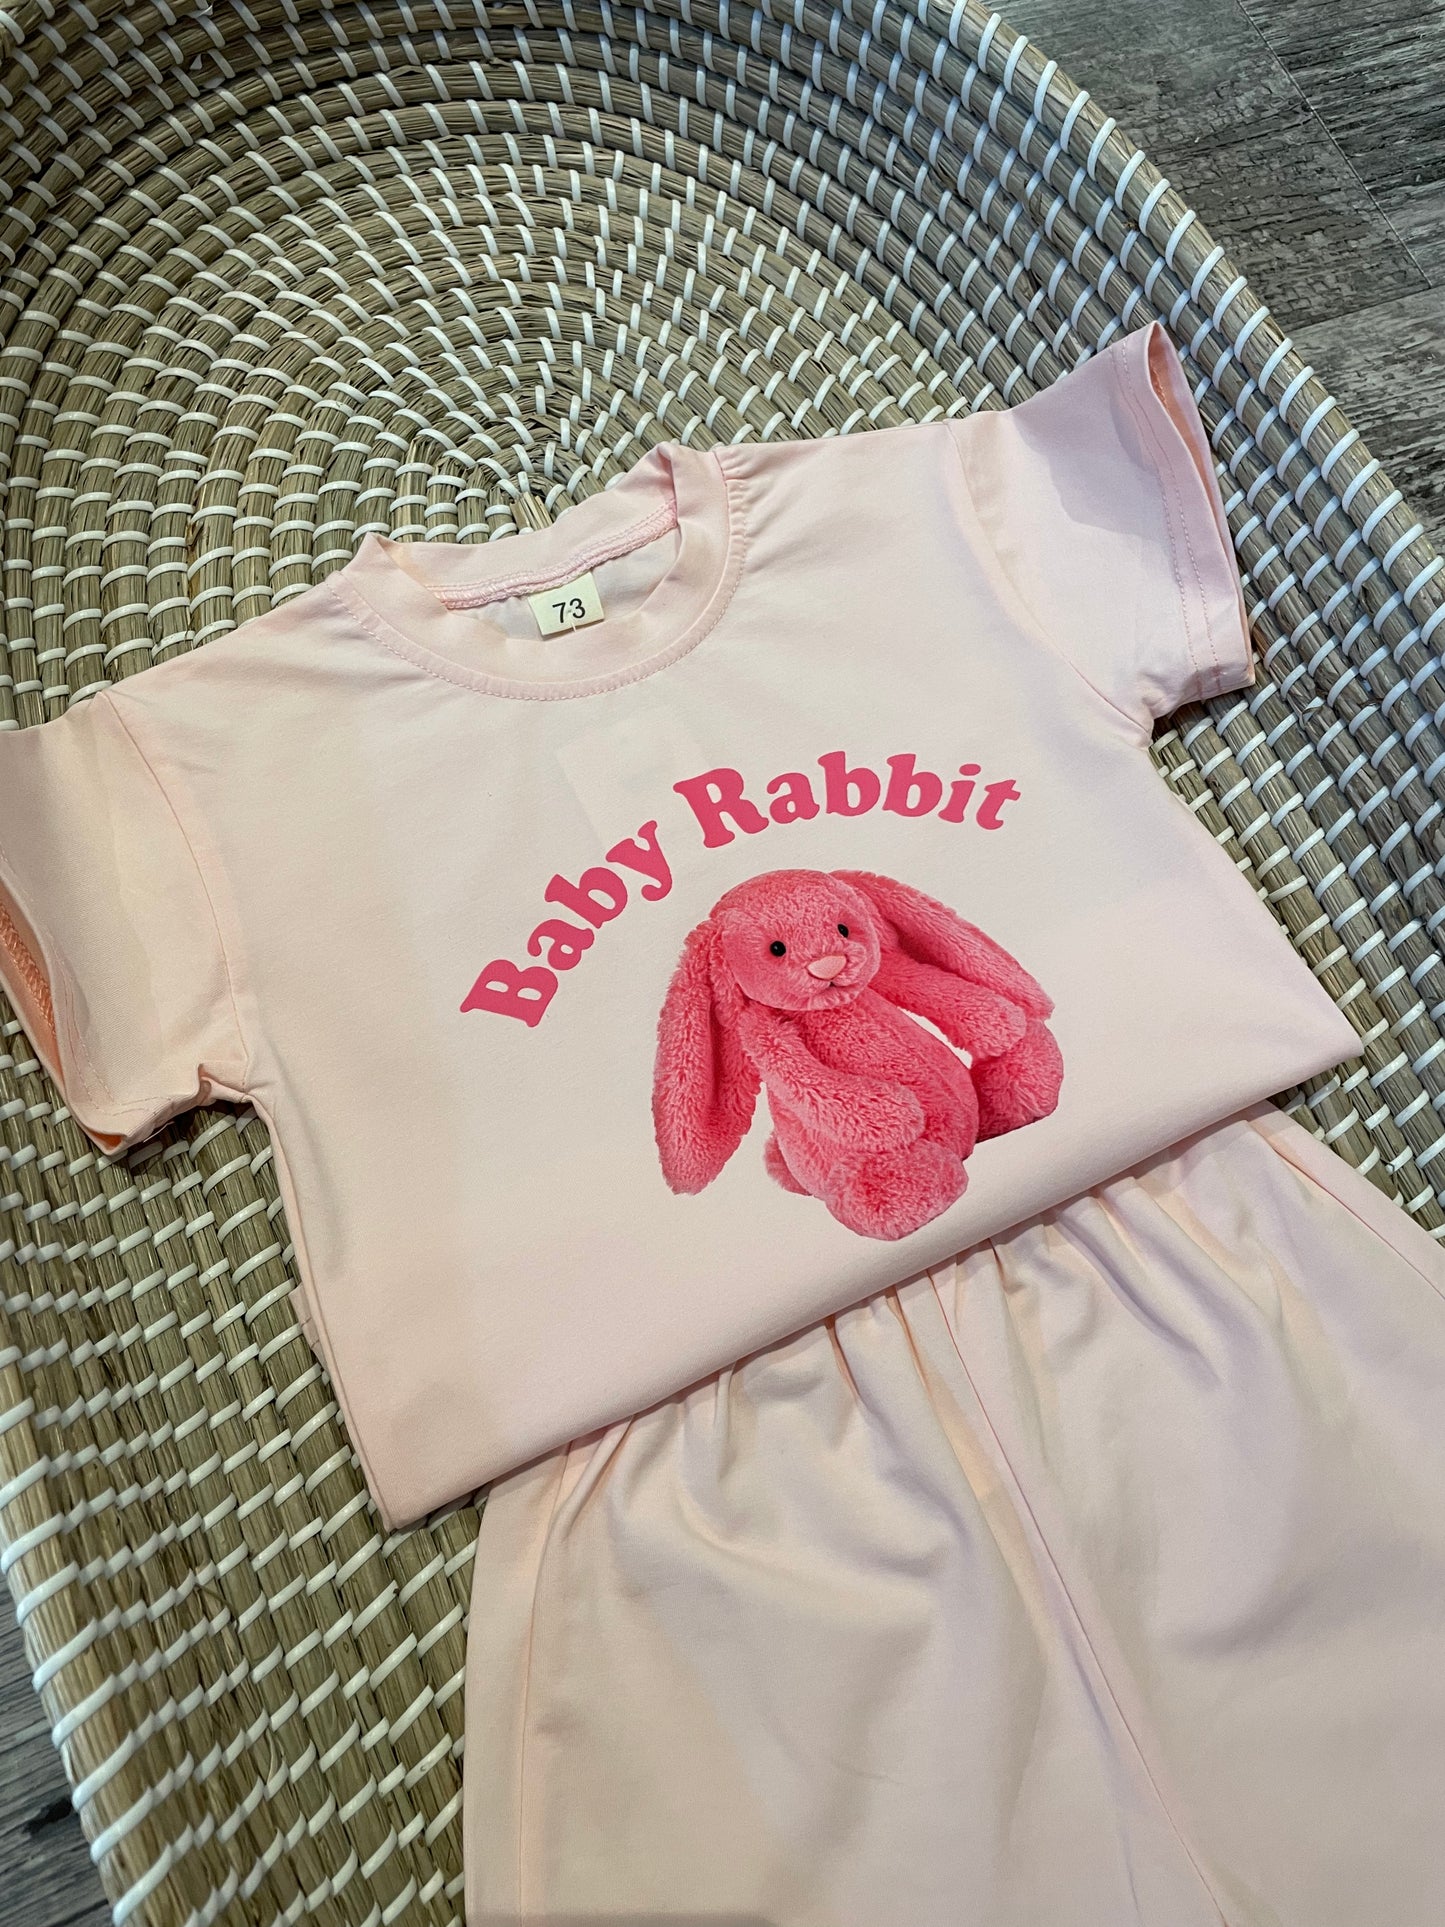 The bunny shorts set